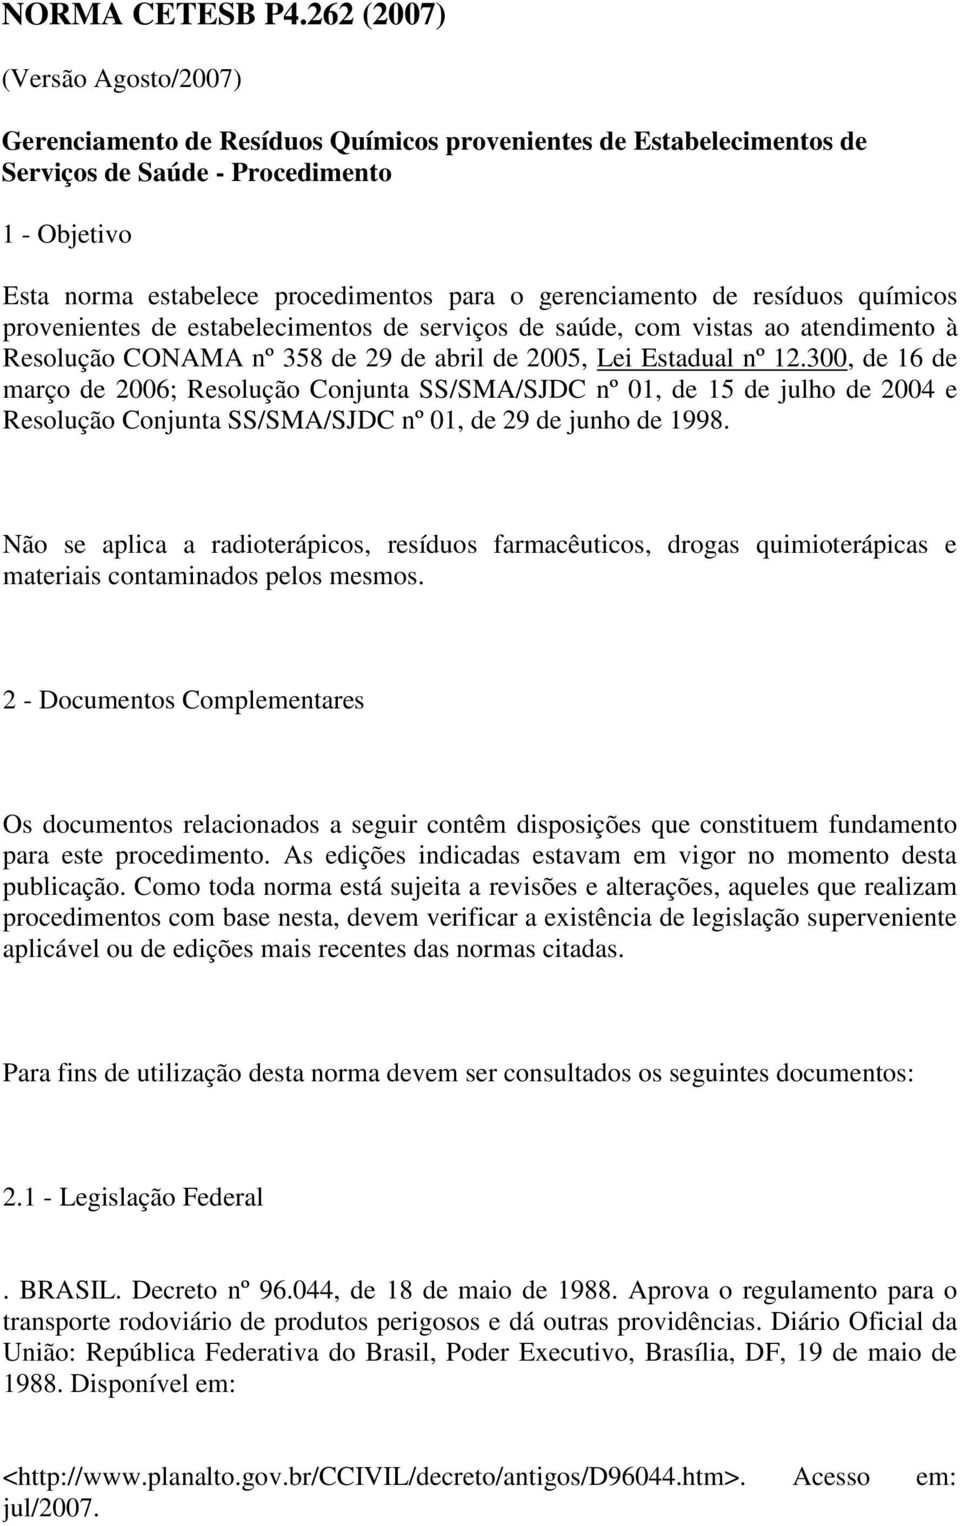 gerenciamento de resíduos químicos provenientes de estabelecimentos de serviços de saúde, com vistas ao atendimento à Resolução CONAMA nº 358 de 29 de abril de 2005, Lei Estadual nº 12.